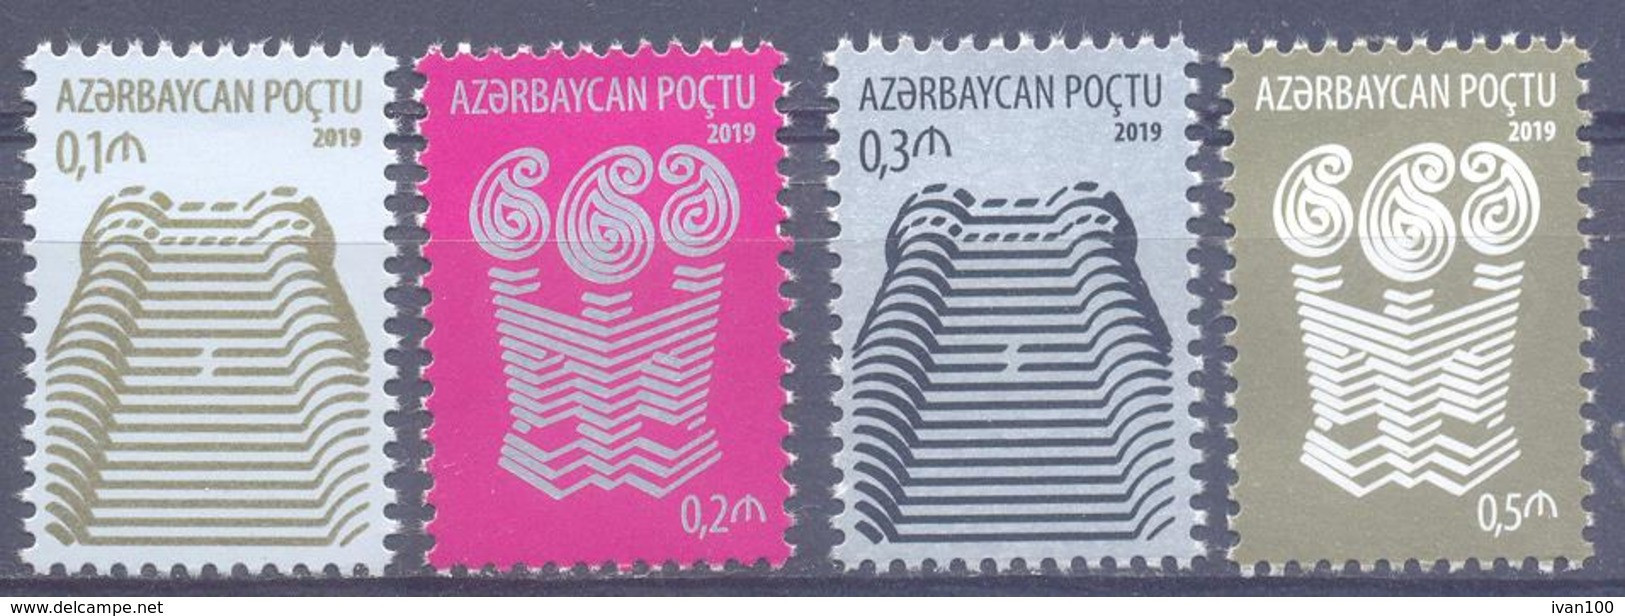 2019.Azerbaijan, Definitives, 4v, Mint/** - Aserbaidschan